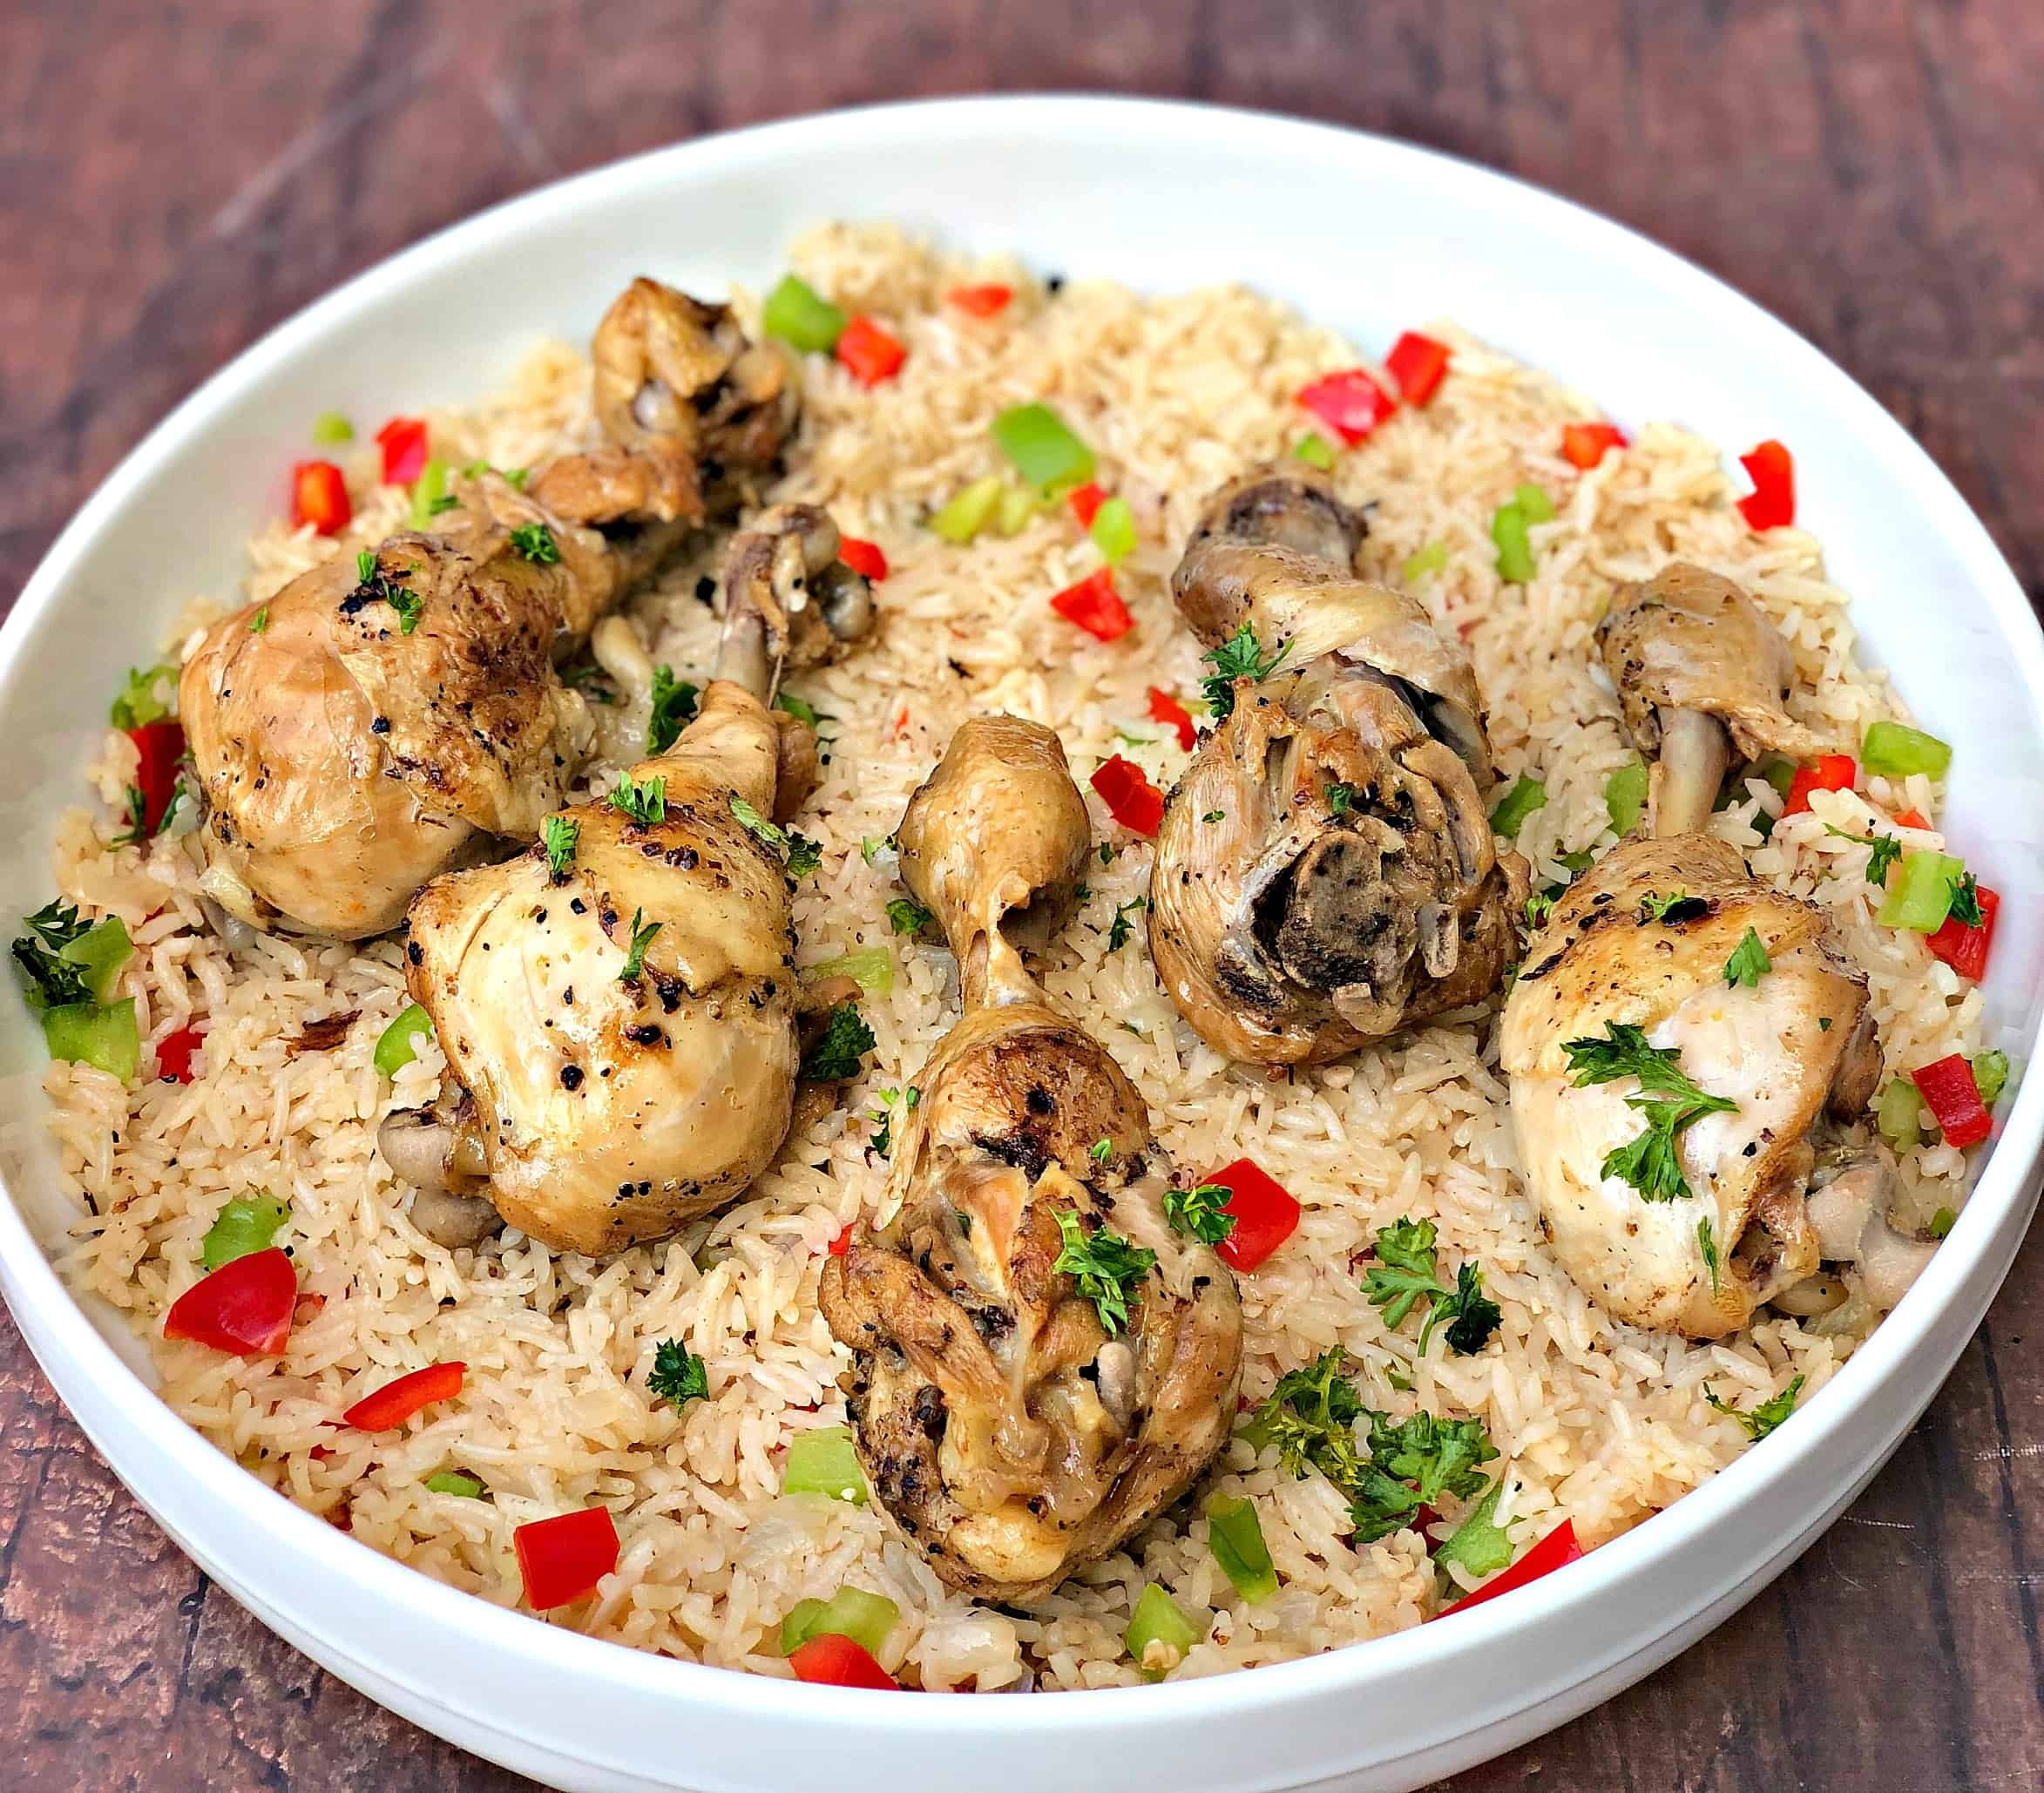 arroz con pollo chicken and rice in a white bowl